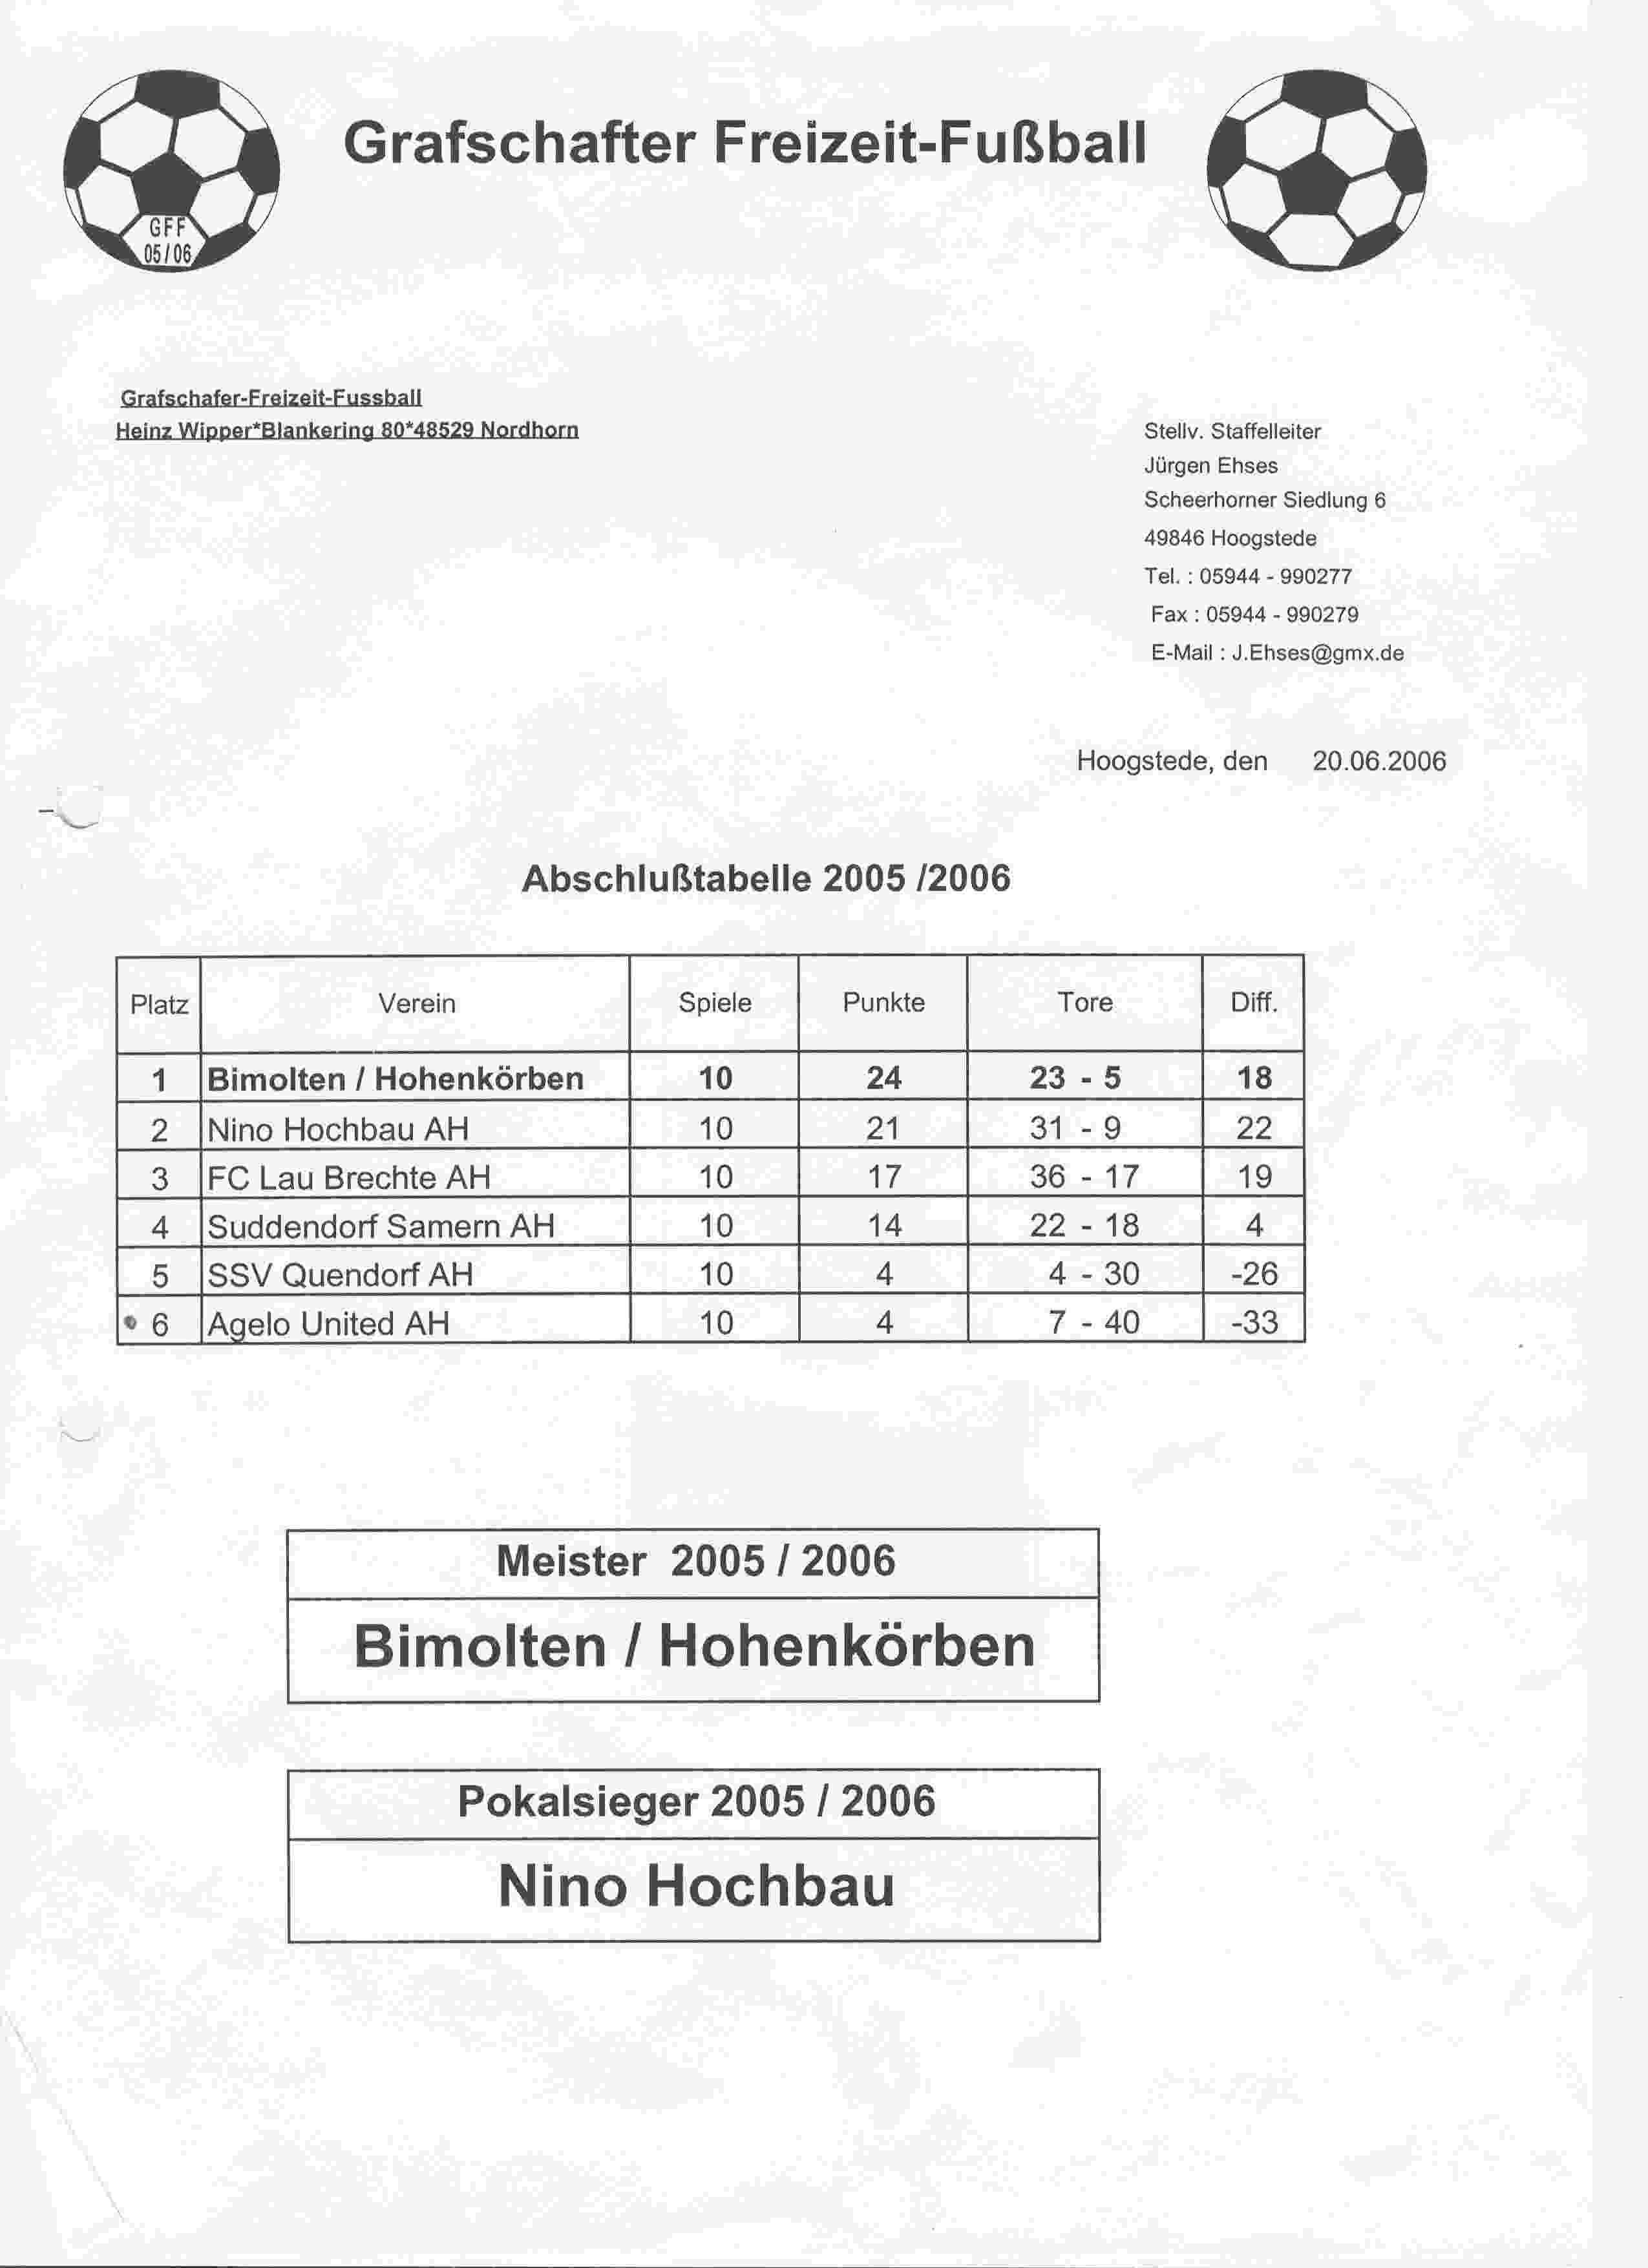 Eindstand Grafschafter Freizeit Fuβall Meisterrunde seizoen 2005/2006